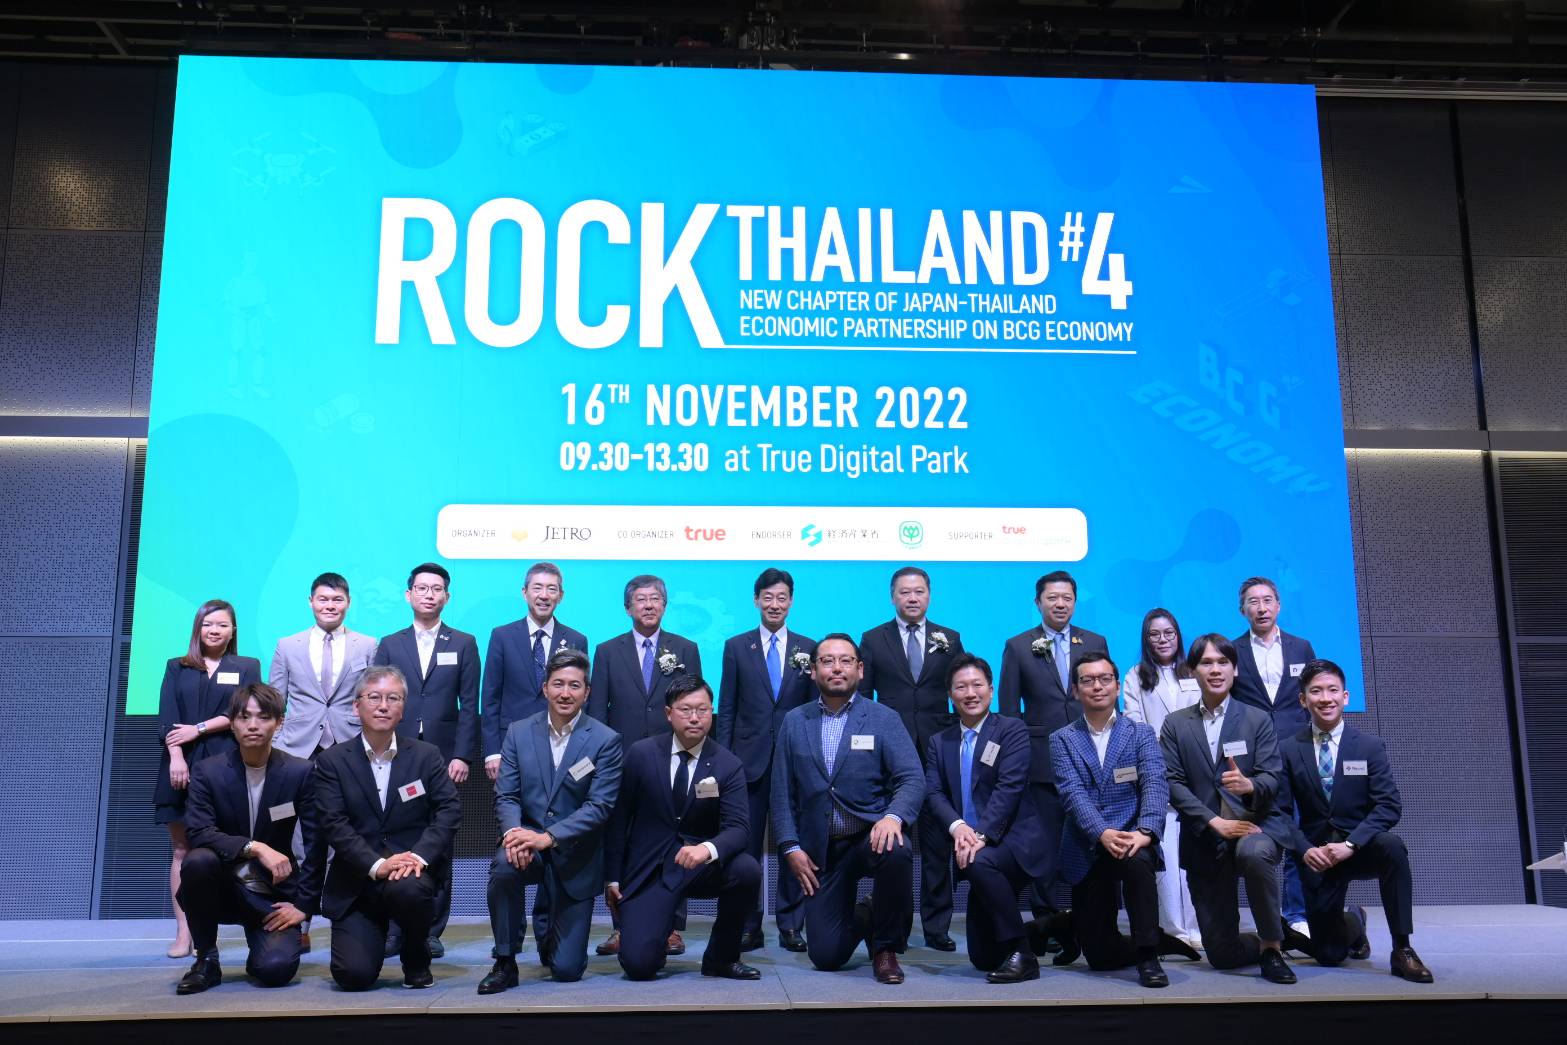 เปิด 9 สตาร์ตอัปญี่ปุ่น เตรียมจับคู่บริษัทไทยชั้นนำ ใน “Rock Thailand” ครั้งที่ 4